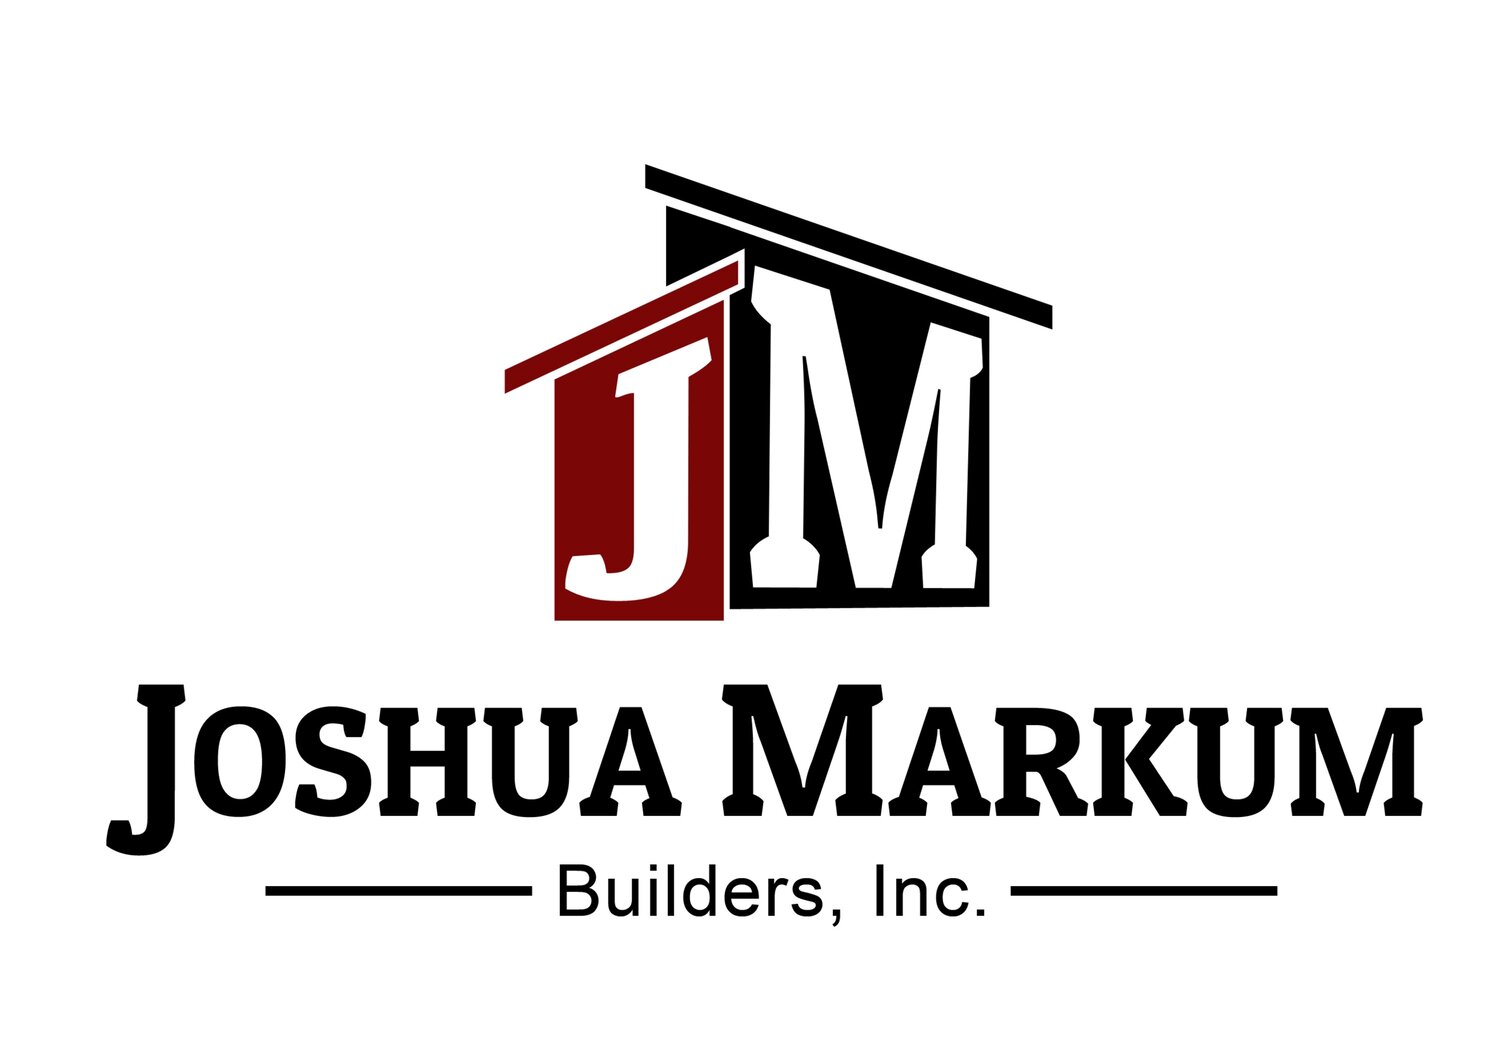 JoshuaMarkum Builders